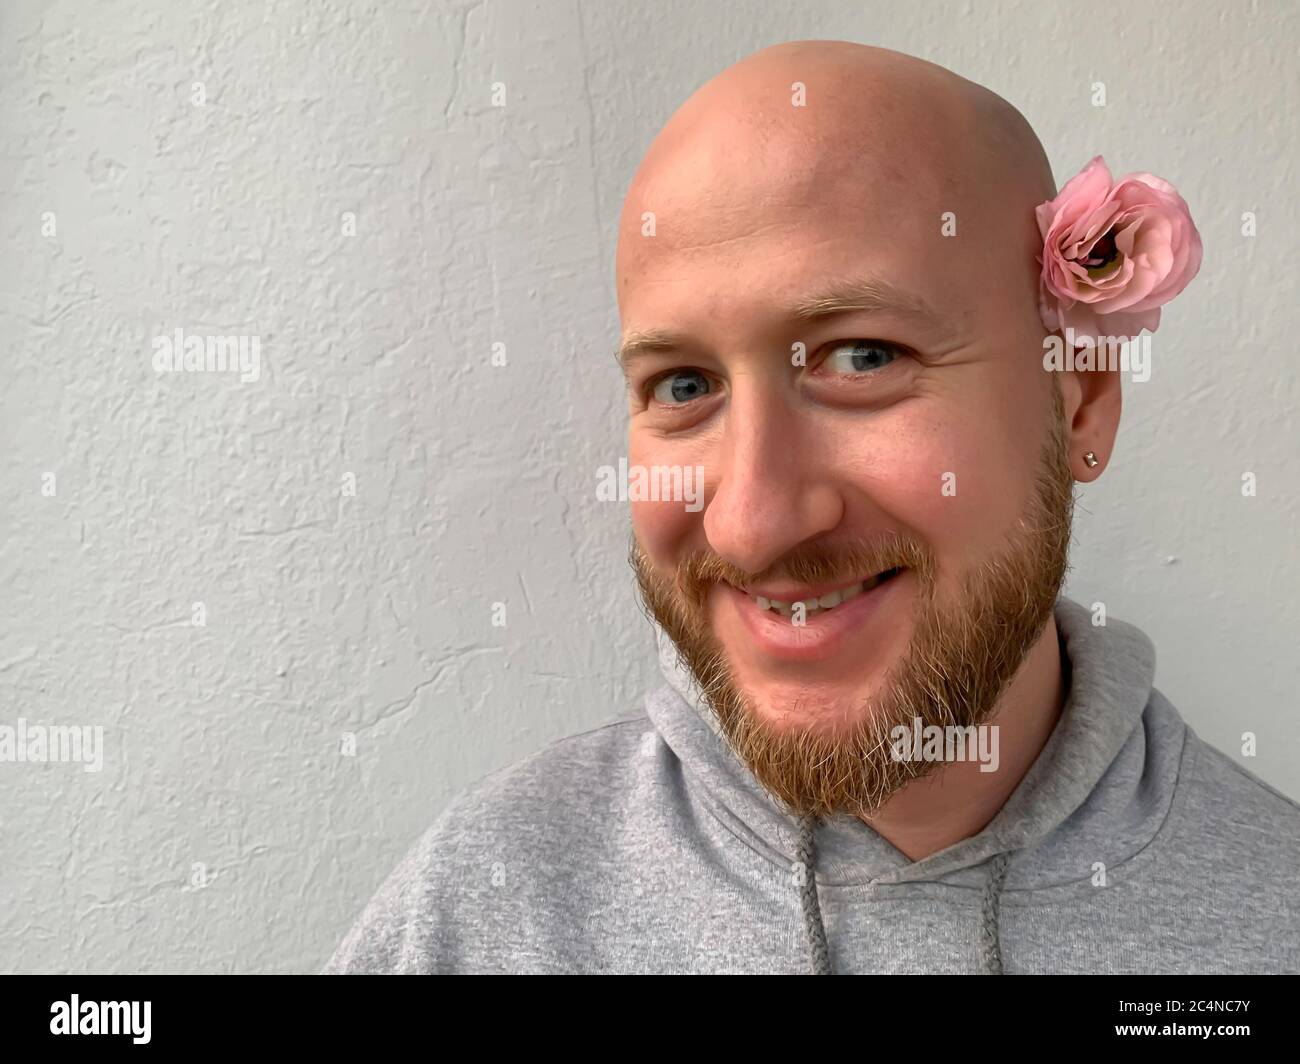 Jeune européen blanc beau sans cheveux fou souriant homme homme homme avec  barbe et fleur rose derrière son oreille Photo Stock - Alamy